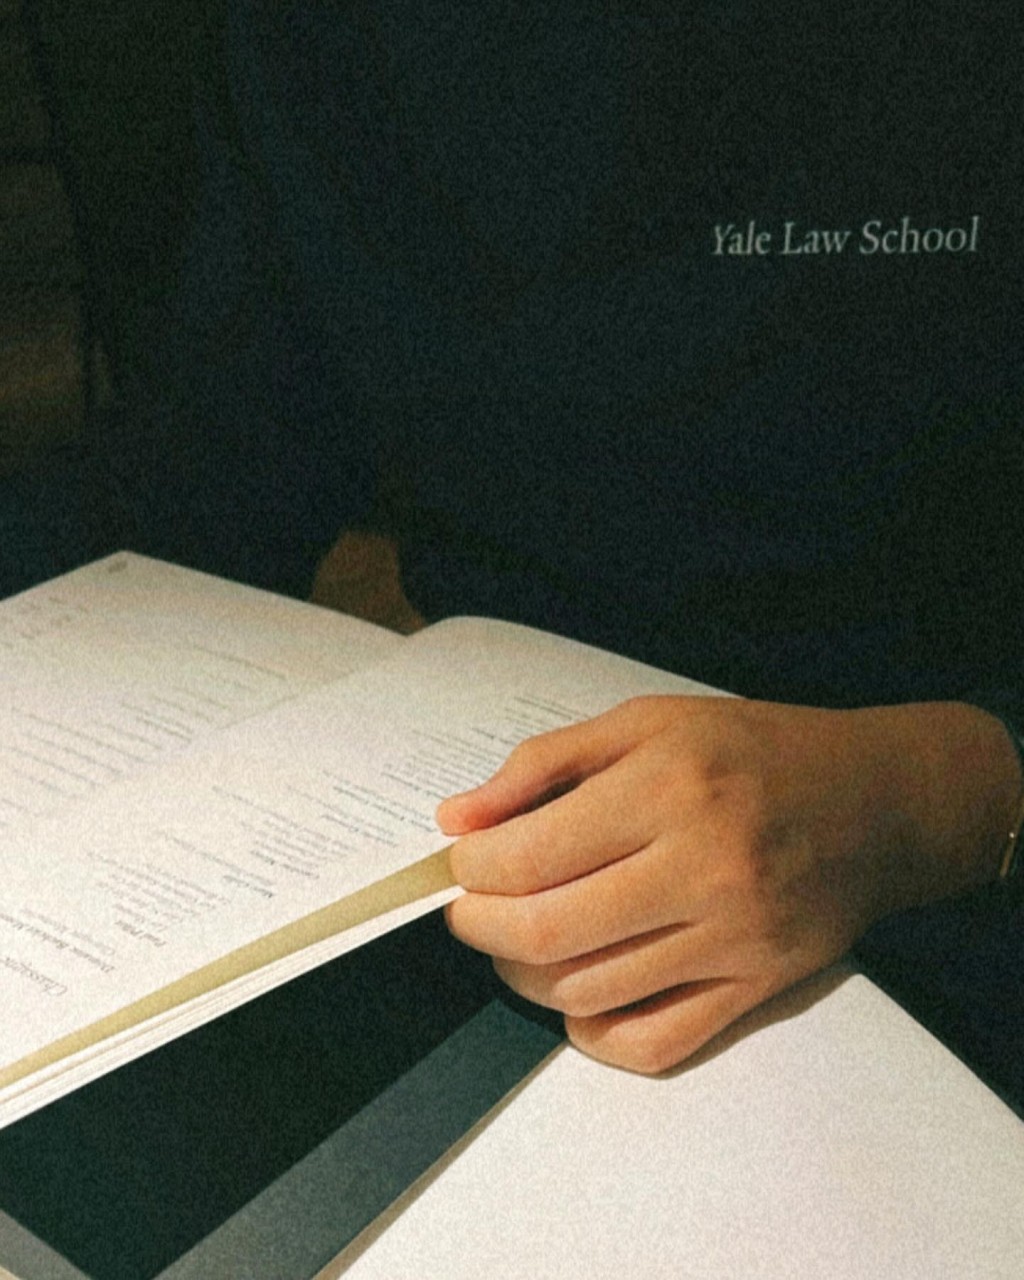 该名男子名为Jacob Chan，其中一张相可见穿了印有「Yale Law School」，莫非毕业于耶鲁法学院？